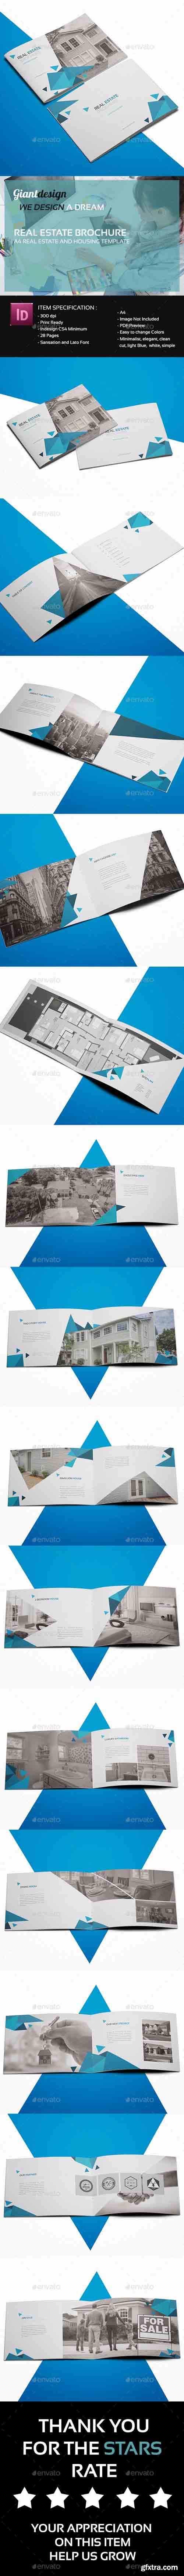 GR - Real Estate Brochure 15110807